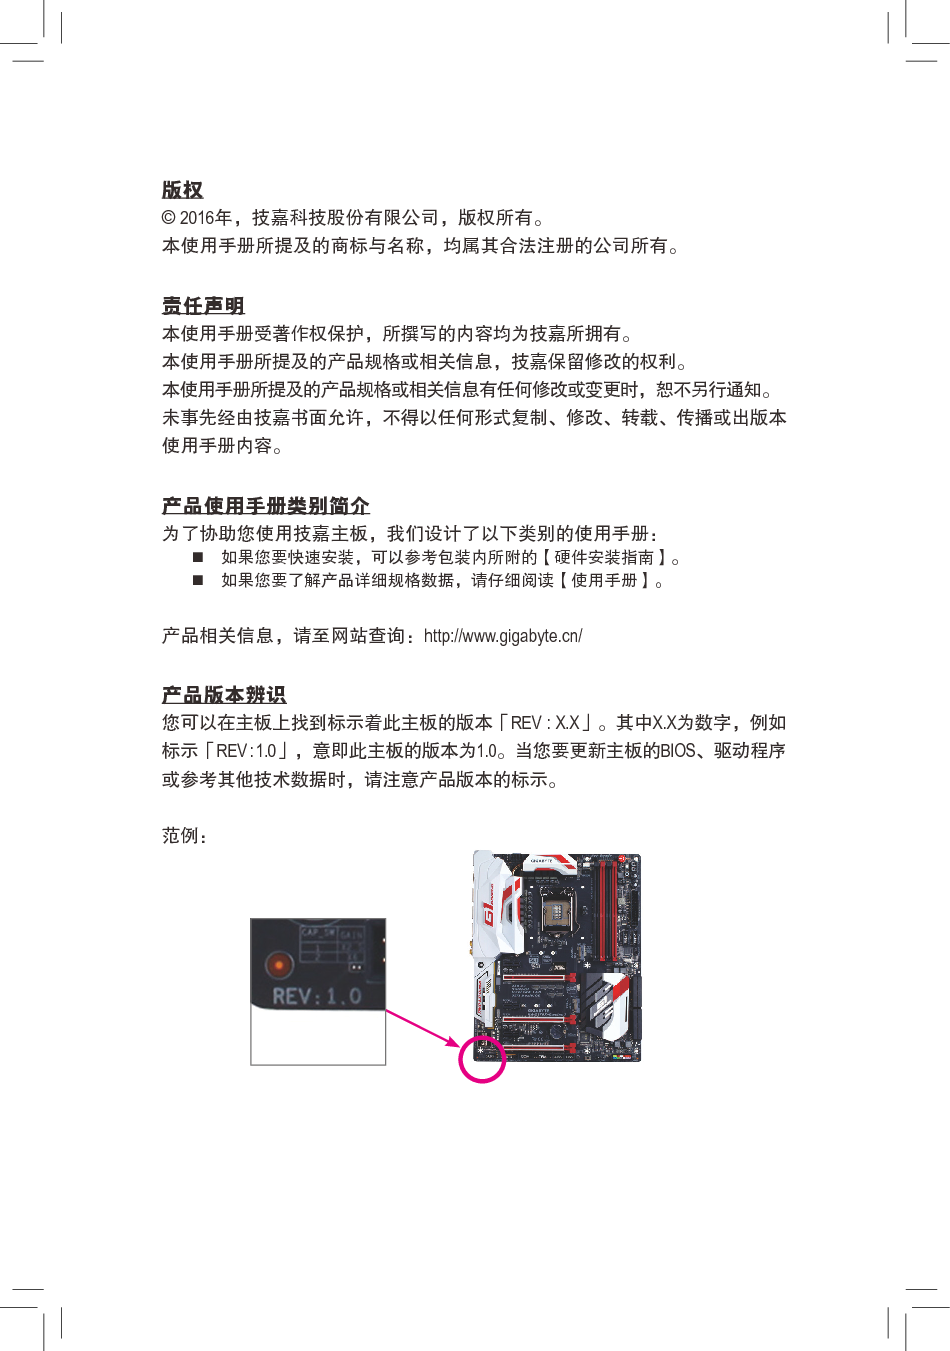 技嘉 Gigabyte GA-Z170X-Gaming 7 1101版 使用手册 第2页